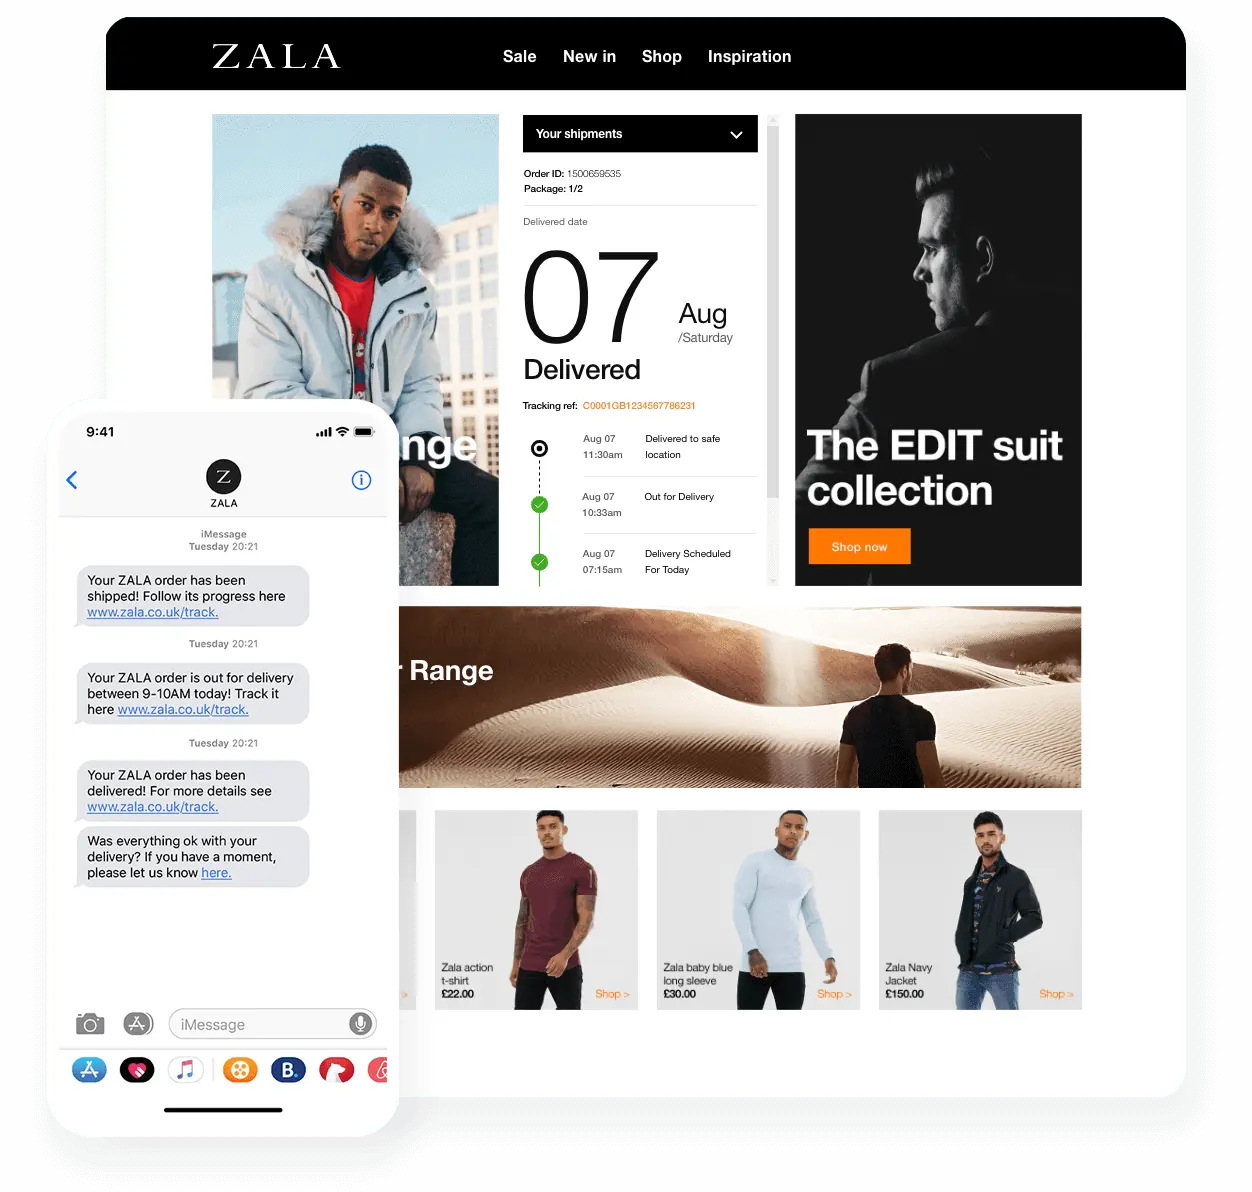 Zala branded tracking